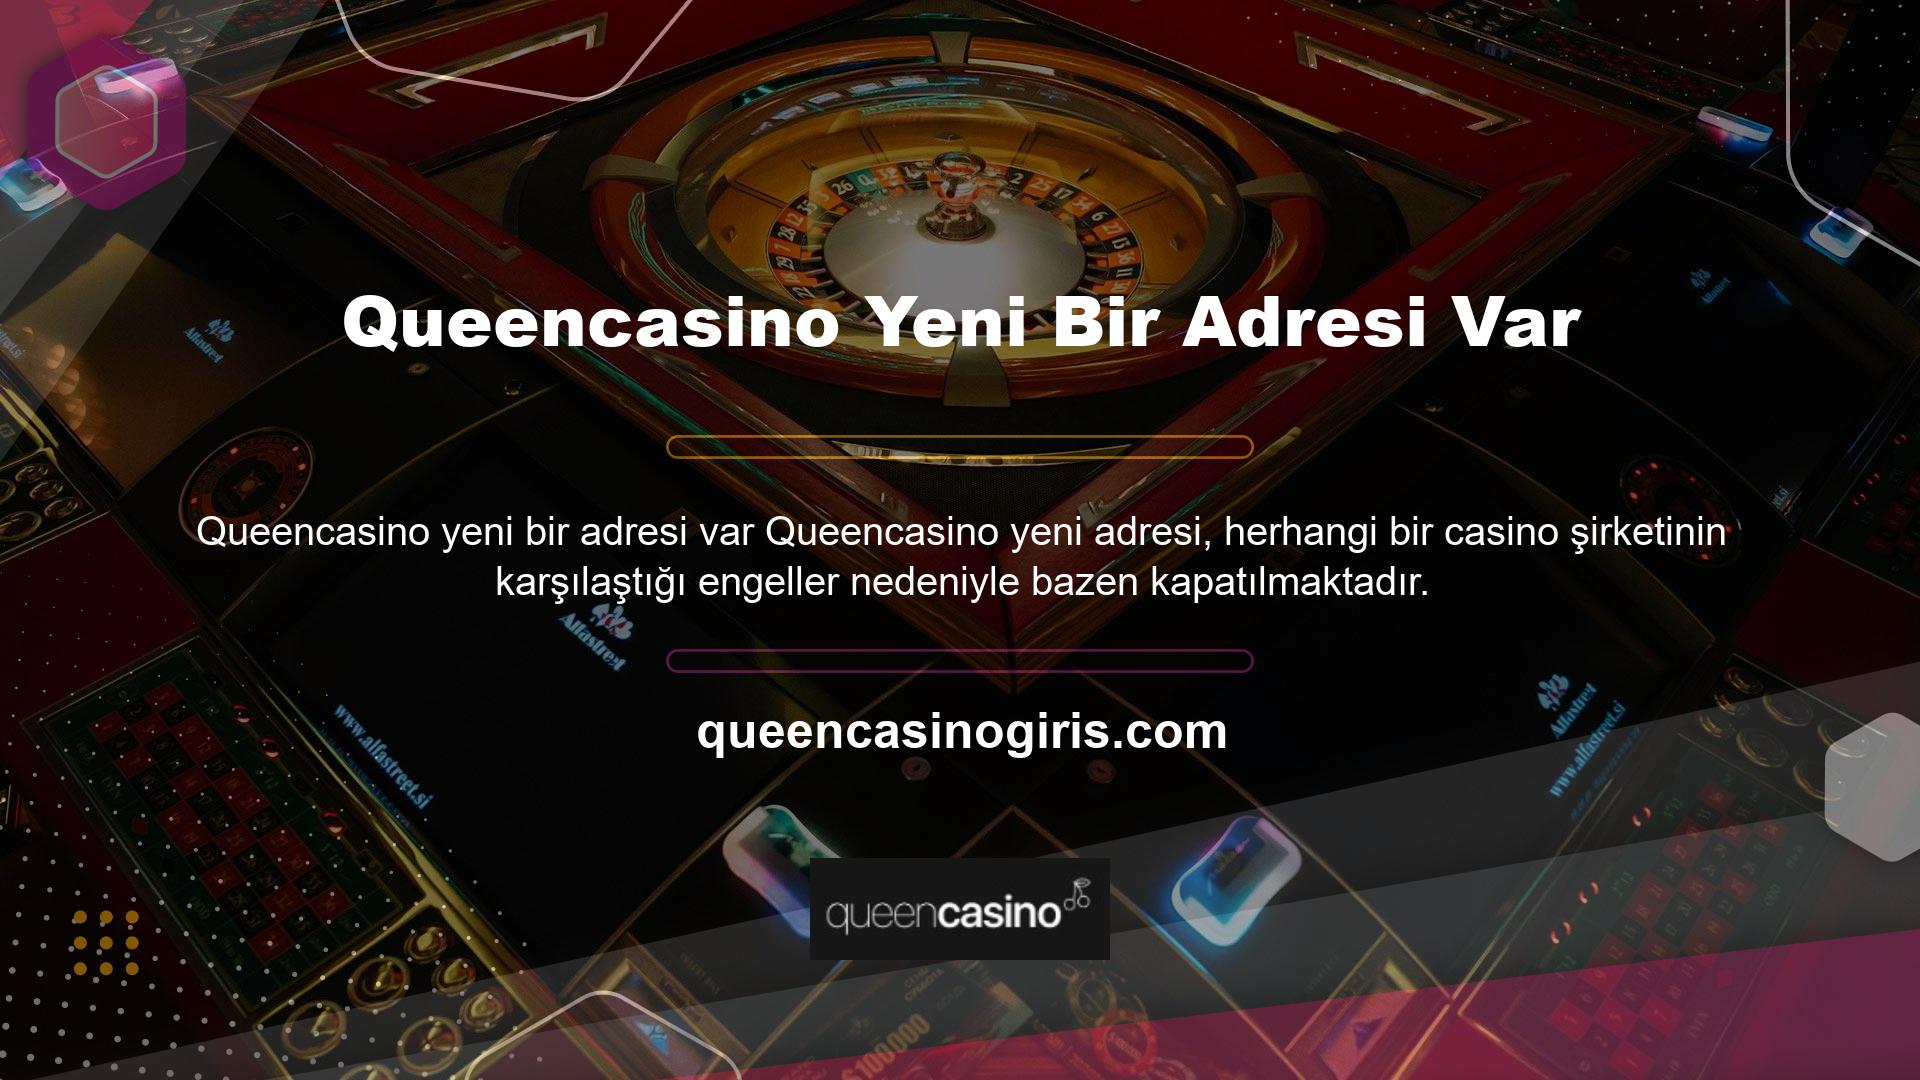 Queencasino neden yeni bir adresi var? Yeni adresiniz nedir Türkiye'de faaliyet gösteren tüm casino şirketleri yasaktır